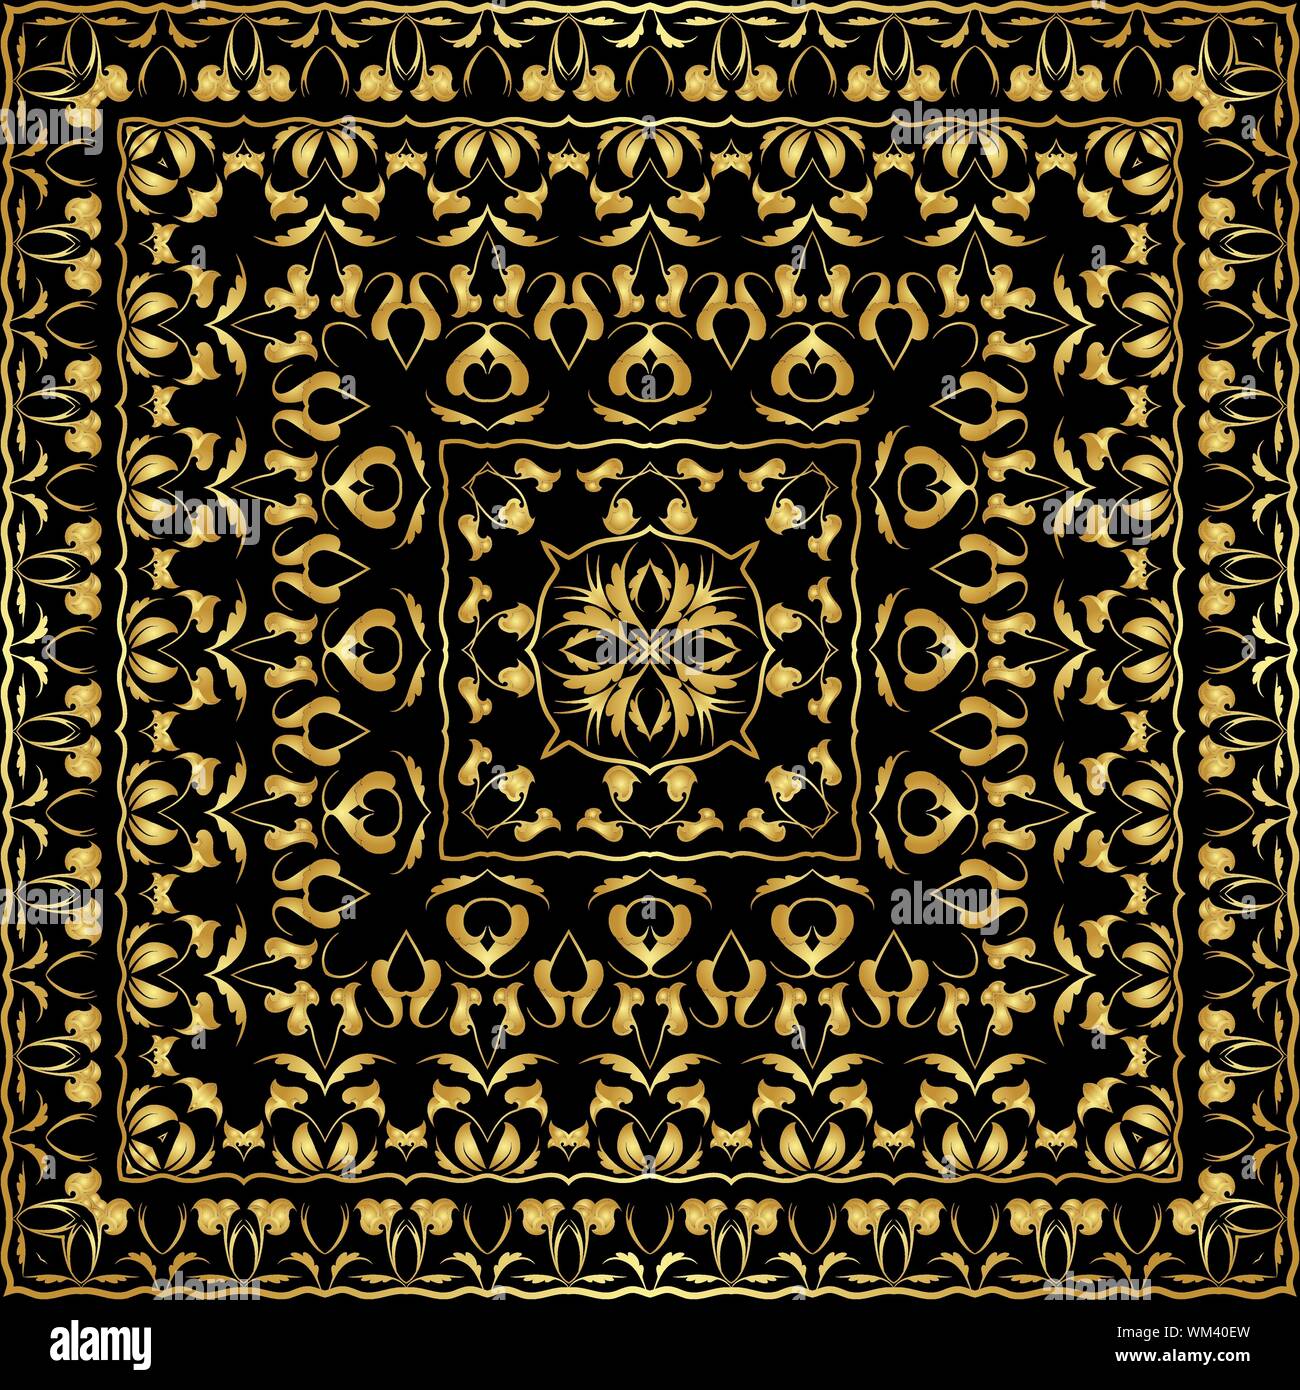 Mouchoir de couleur or. De riches motifs originaux pour un foulard.  Ornement carrés dans un style oriental. Vector illustration Image  Vectorielle Stock - Alamy